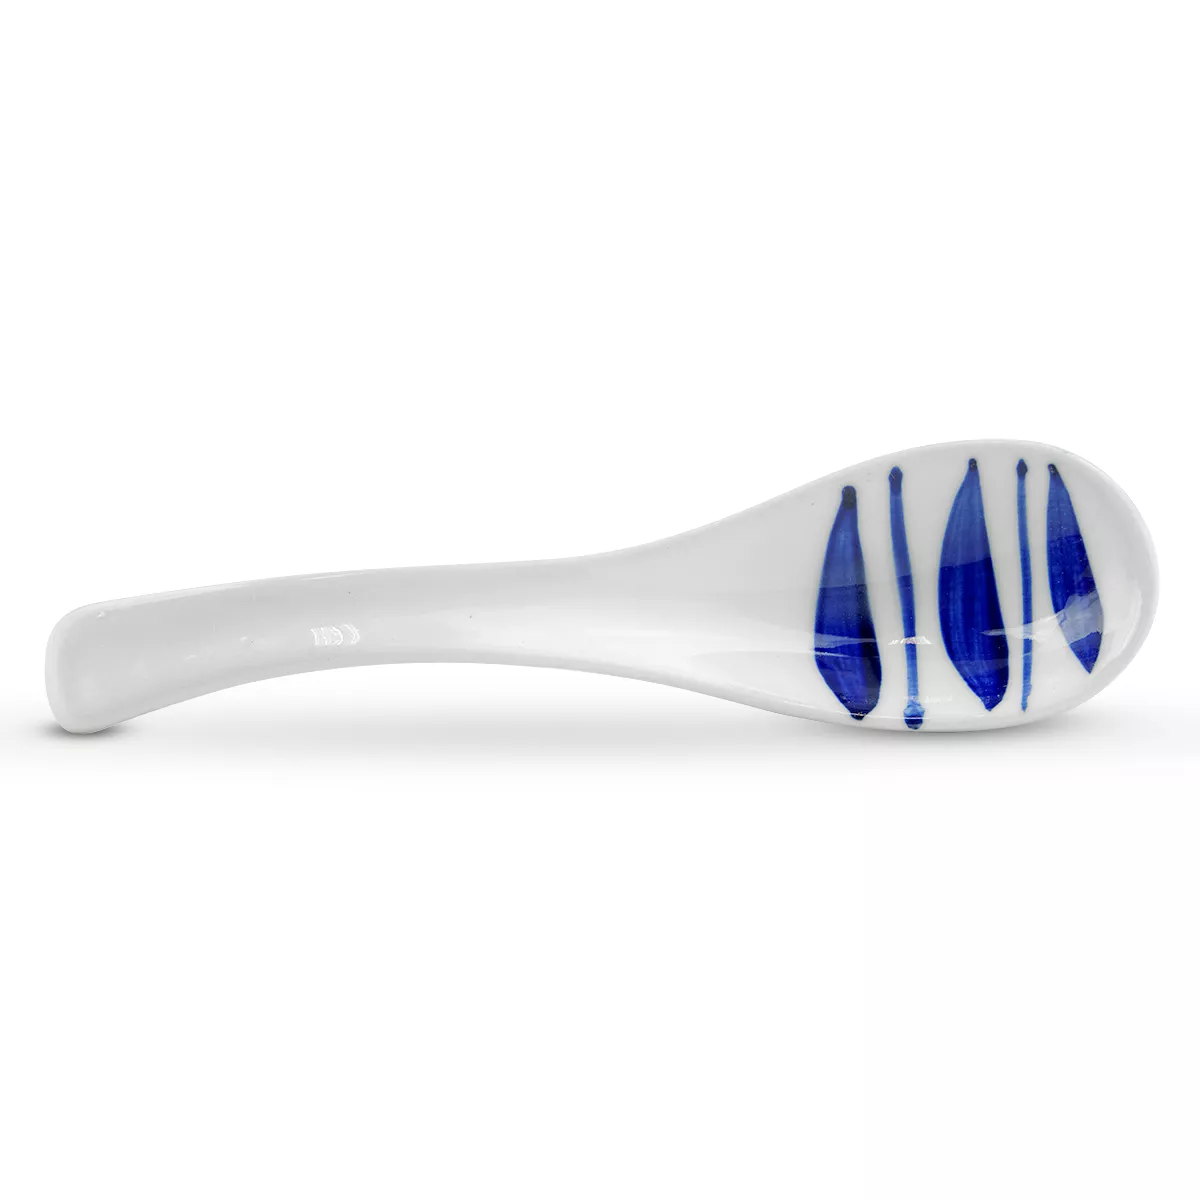 Lingura ceramica (model alb/albastru) 14.2cm GT, [],asianfood.ro